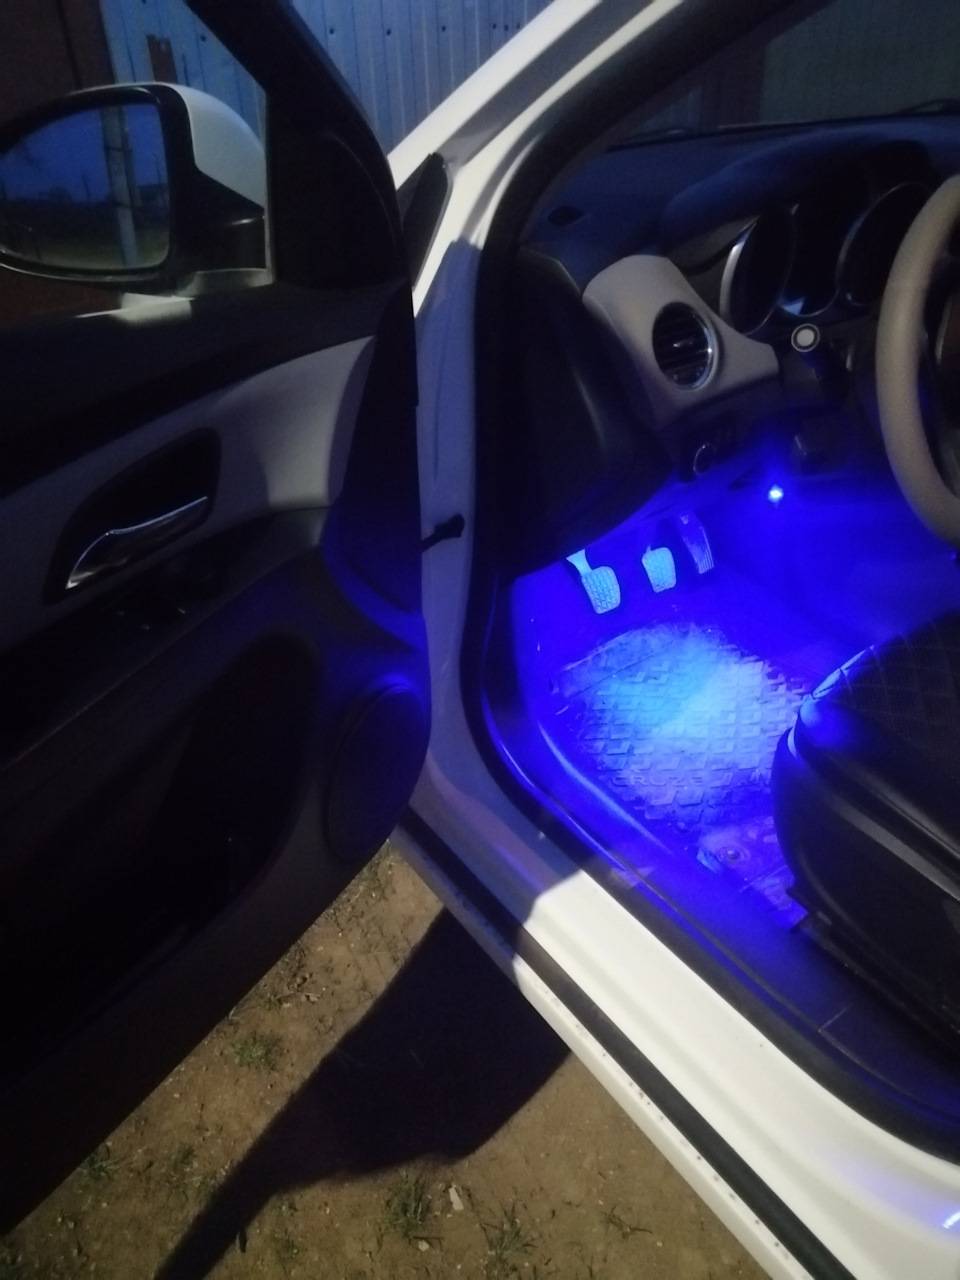 Подсветка дверей в автомобиле своими руками: инструкция